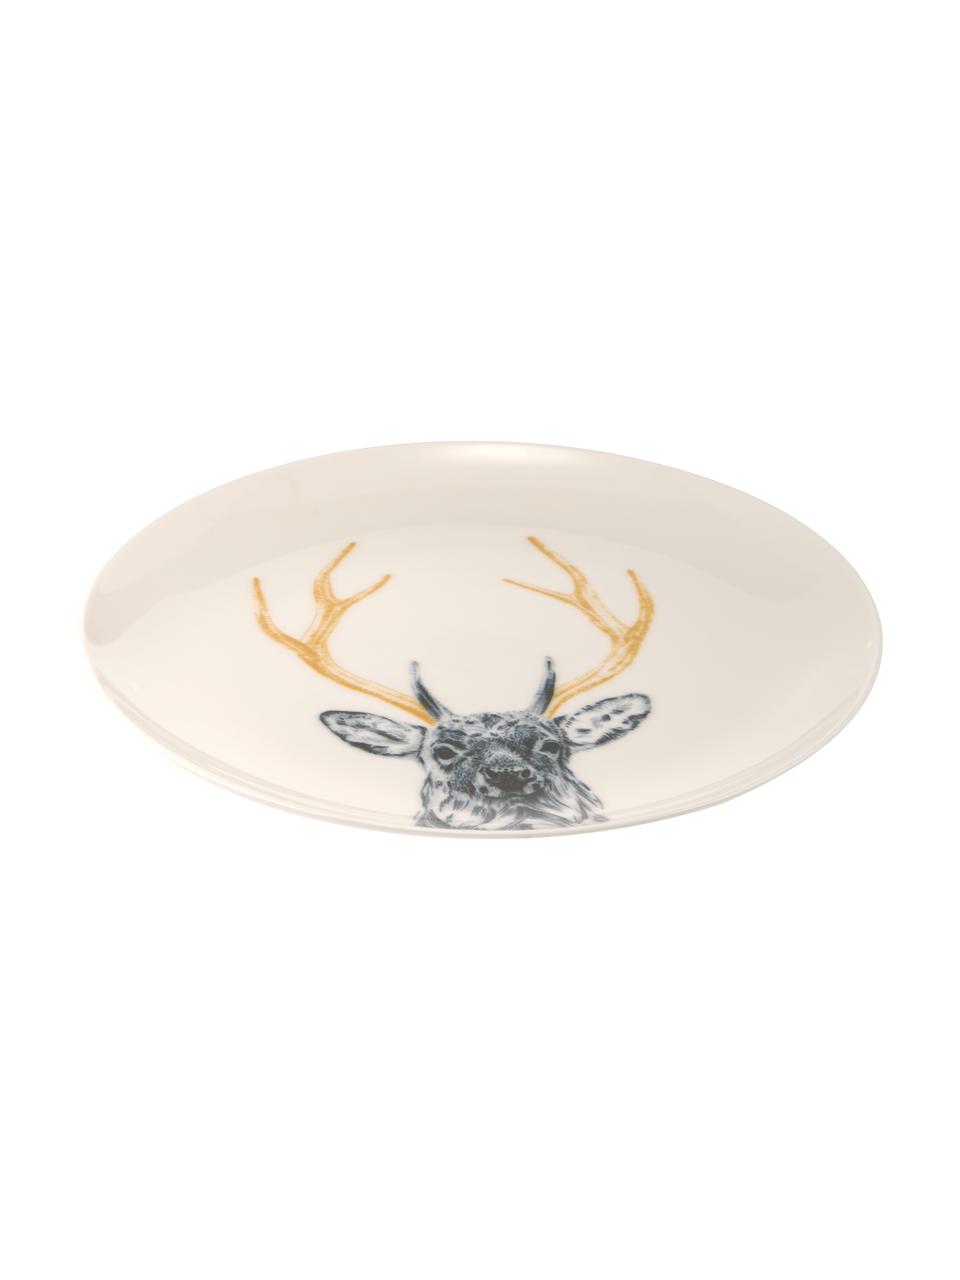 Handgefertigter Teller Safari Deer, Prozellan, Weiss, Ø 26 cm